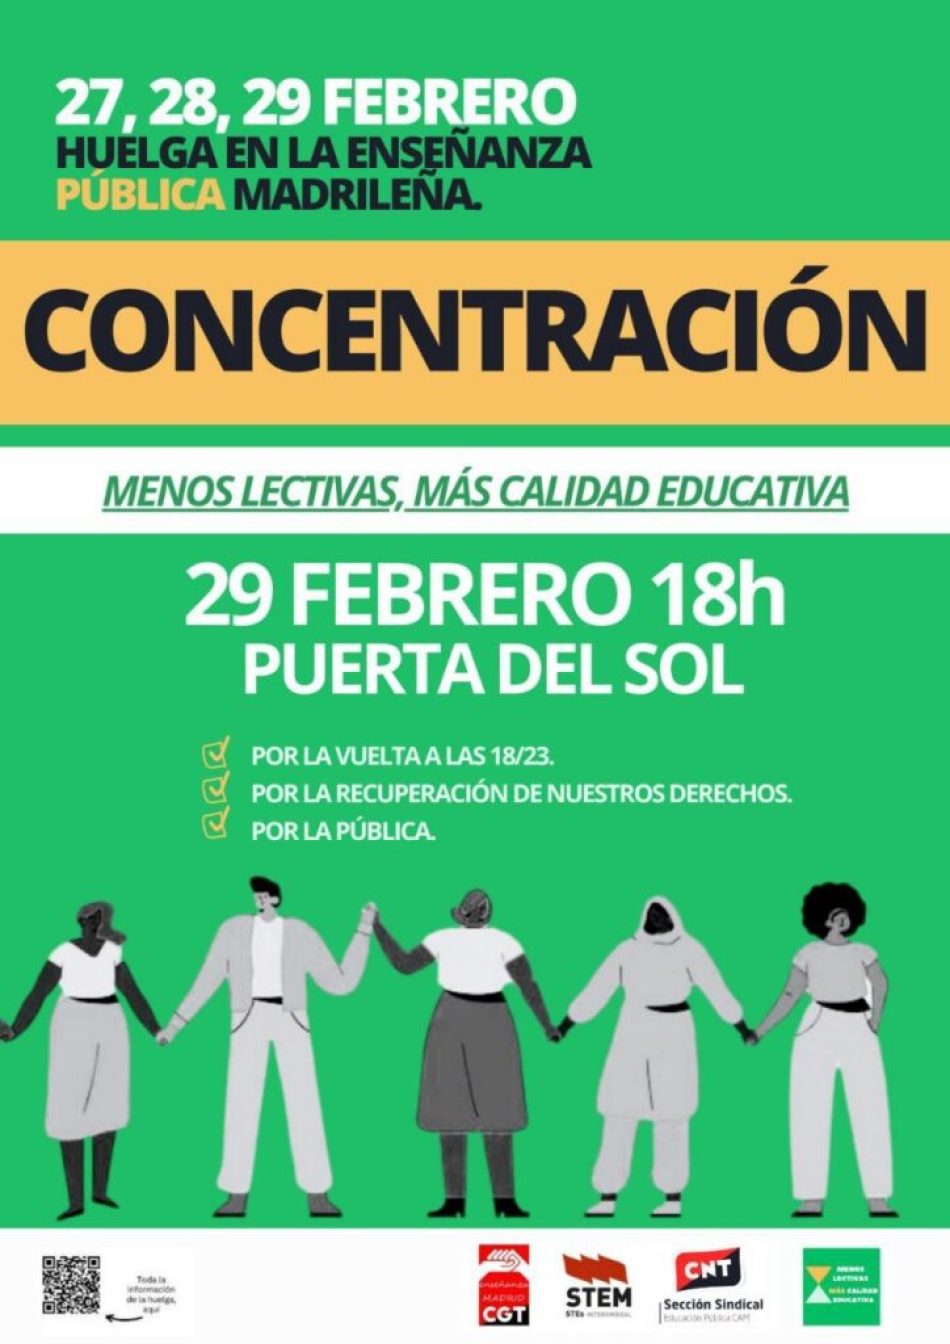 27, 28 y 29 de febrero: Calendario, movilizaciones y acciones. Huelga en la enseñanza pública de Madrid